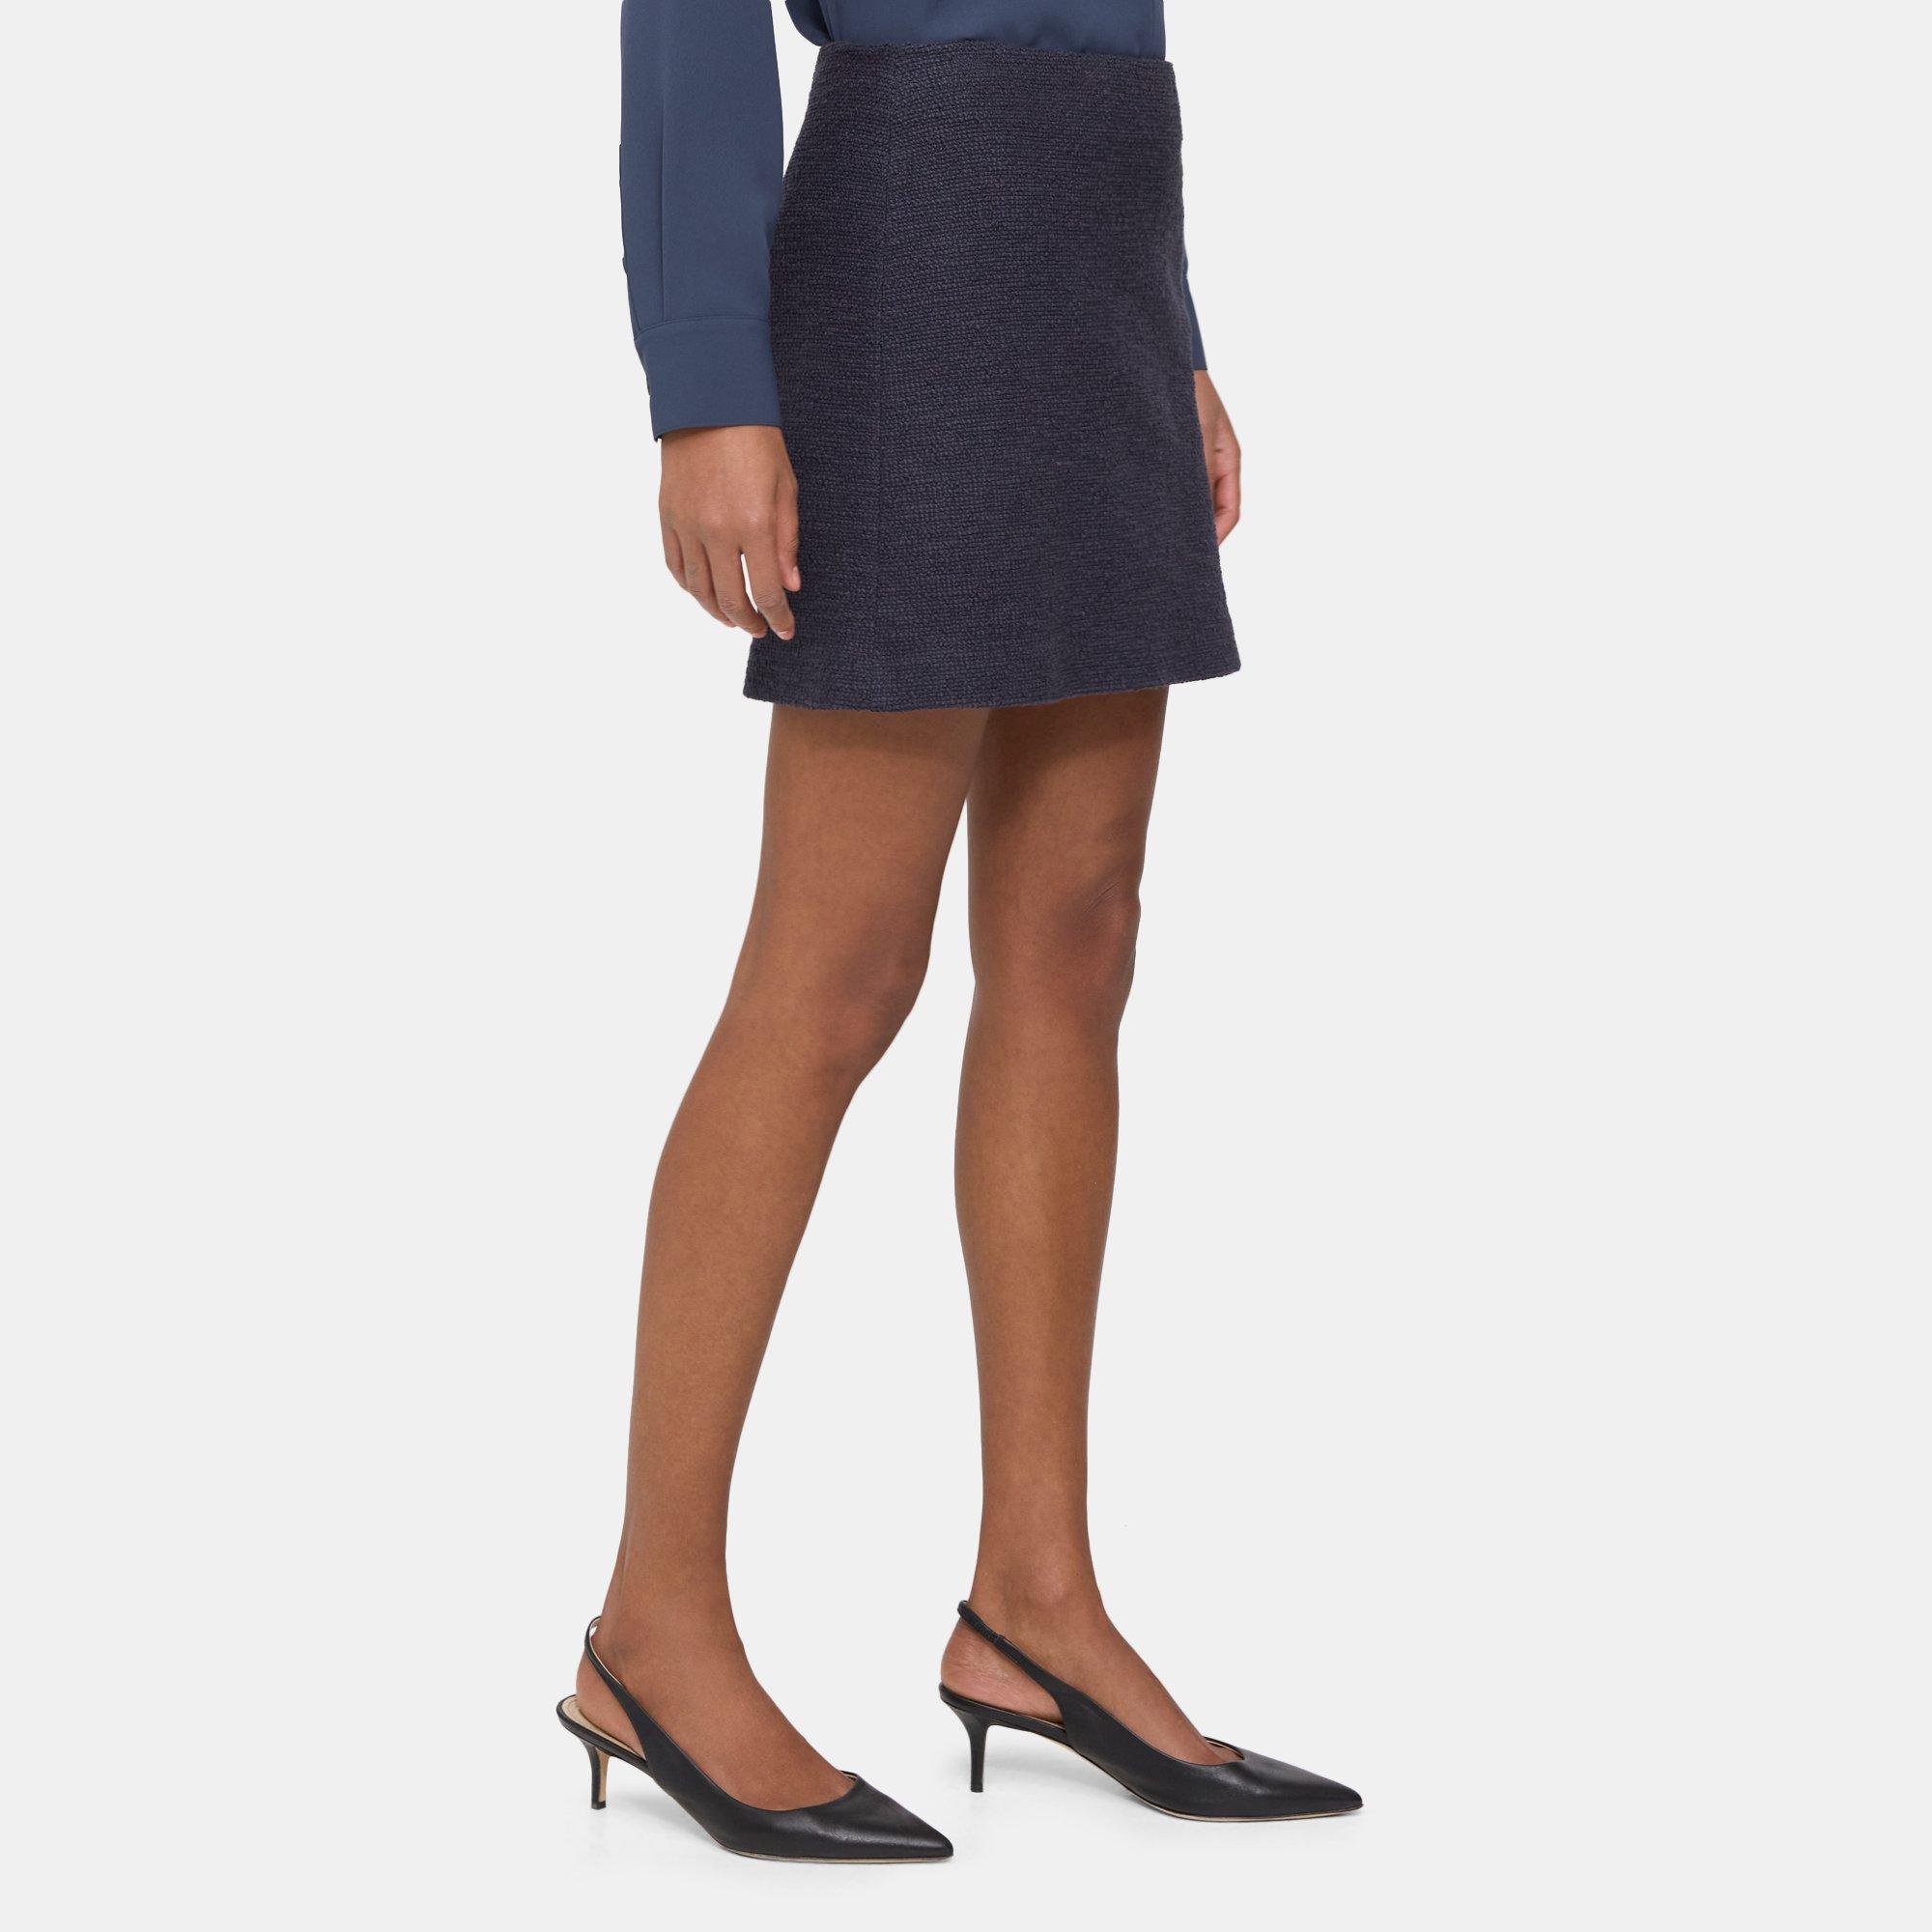 띠어리 스커트 Theory Mini Skirt in Stretch Tweed,NAVY